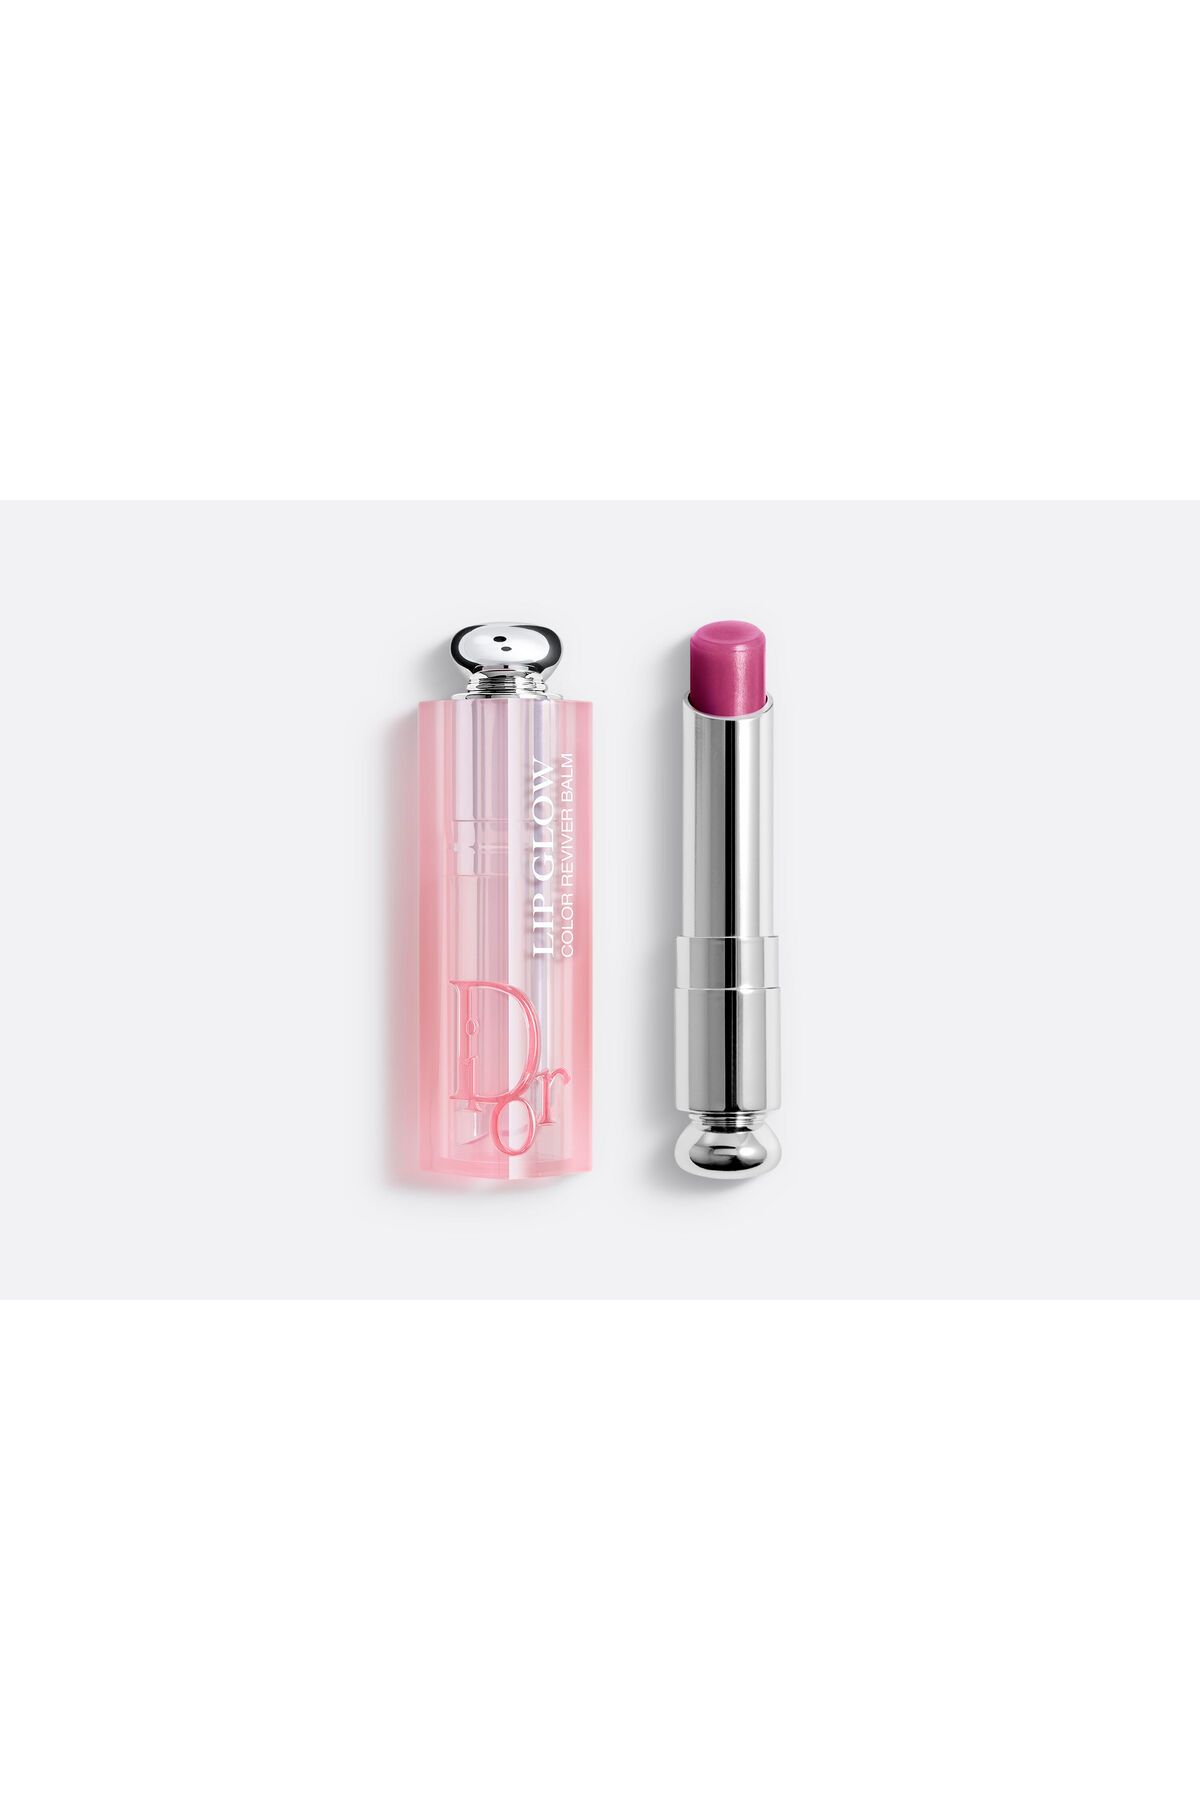 Dior Addict Lip Glow - Kiraz Yağ İçerikli 24 Boyunca Etkili Nemlendirici Pürüzsüzleştirici